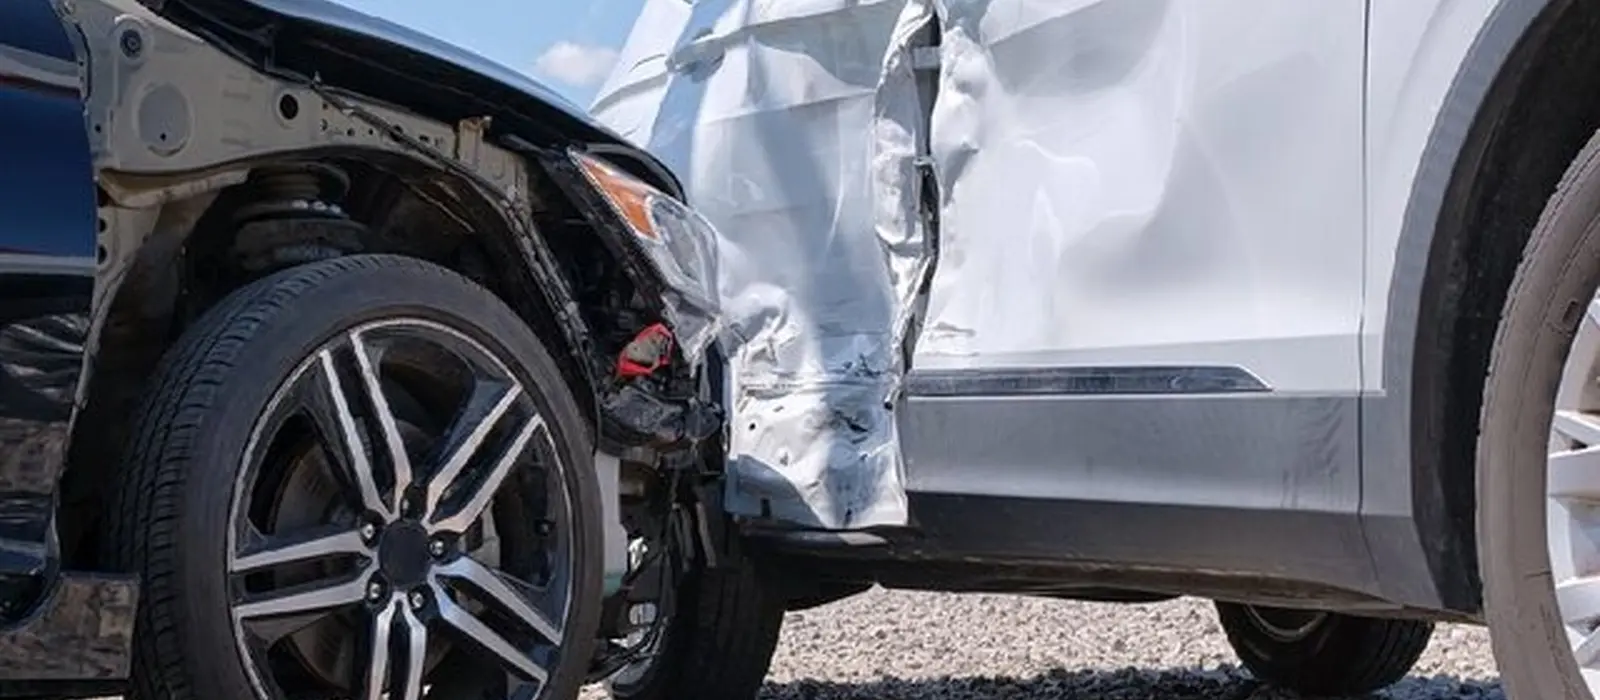 بیشترین تلفات تصادفات رانندگی مربوط به کدام استان هاست؟